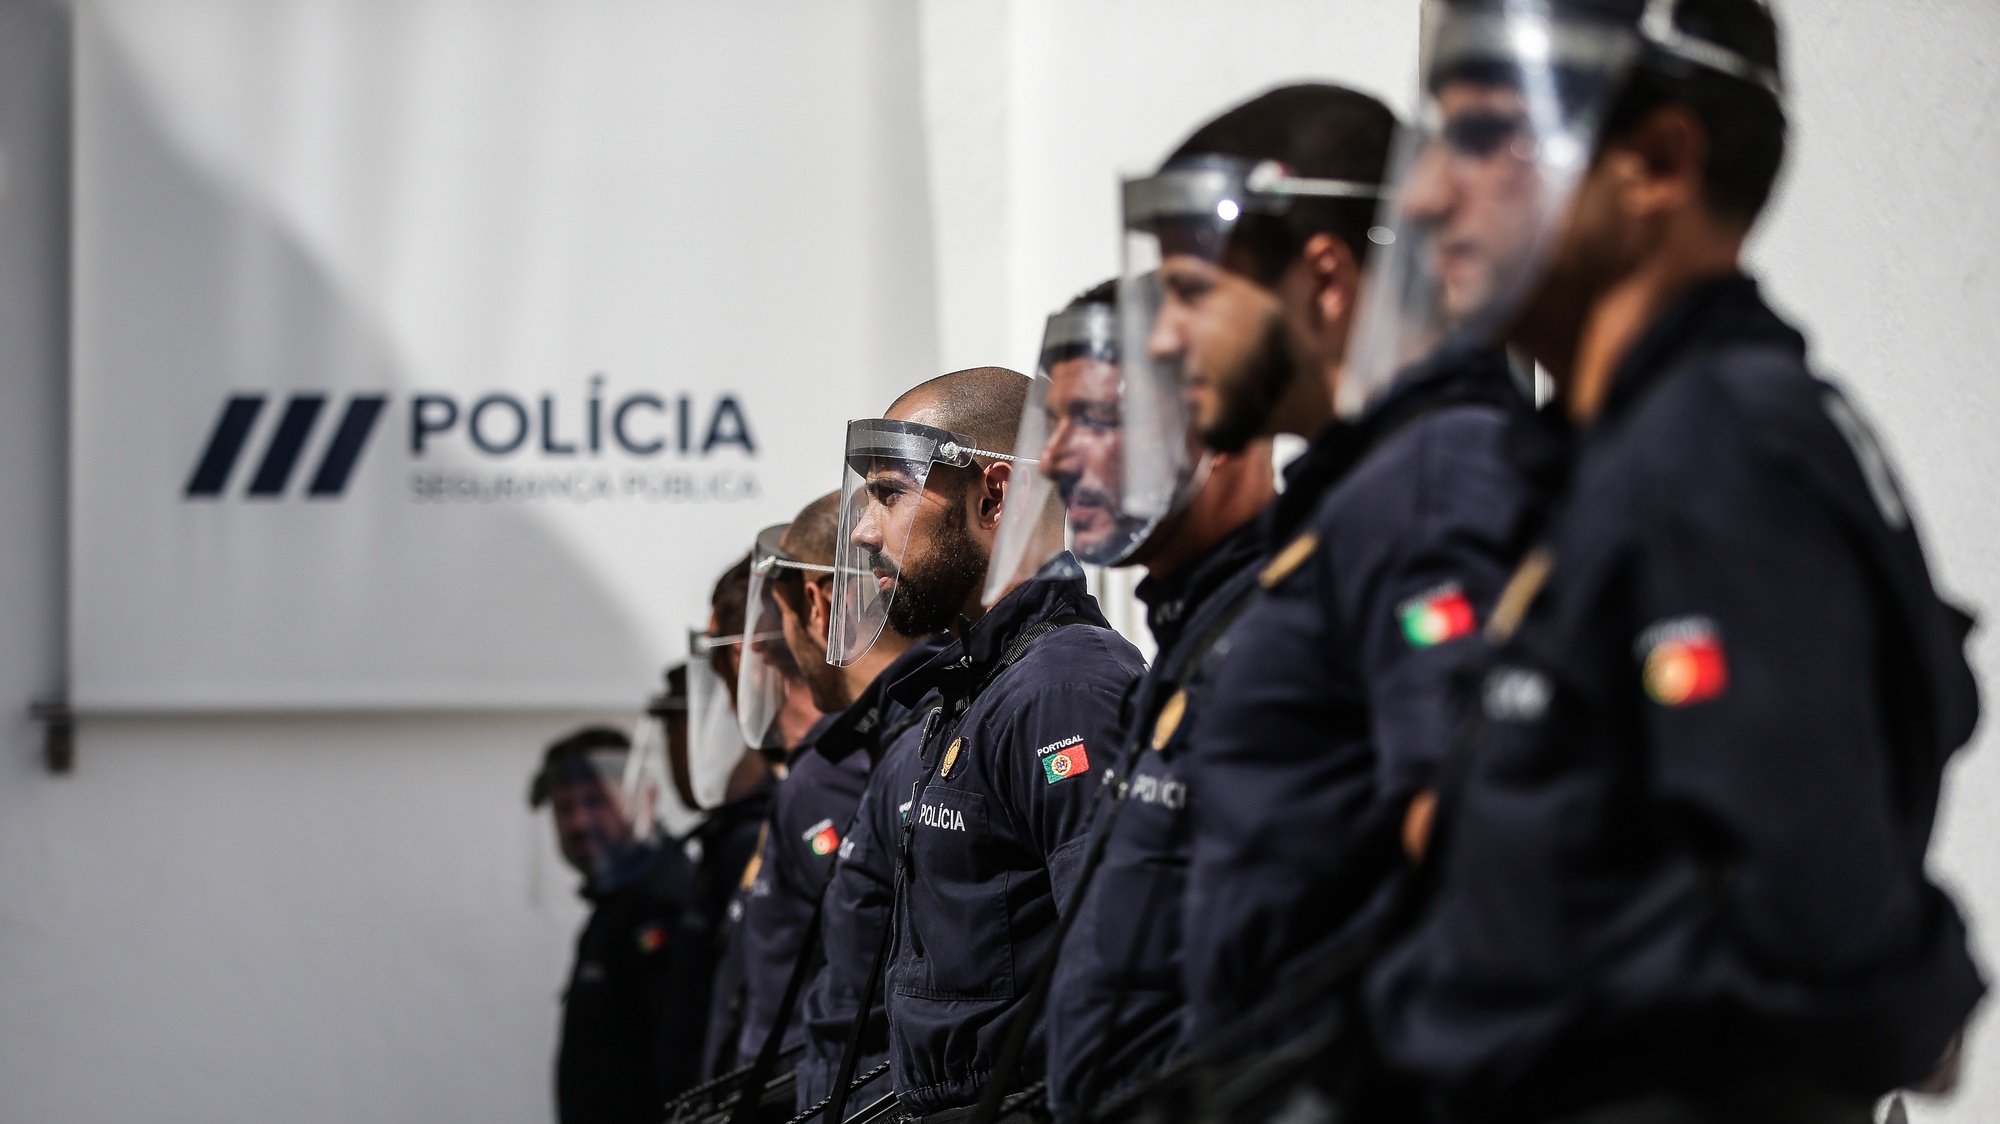 Cerimónia comemorativa do 153.º Aniversário da Polícia de Segurança Pública (PSP), Direção Nacional da PSP, em Lisboa, 2 de julho de 2020. MÁRIO CRUZ/LUSA